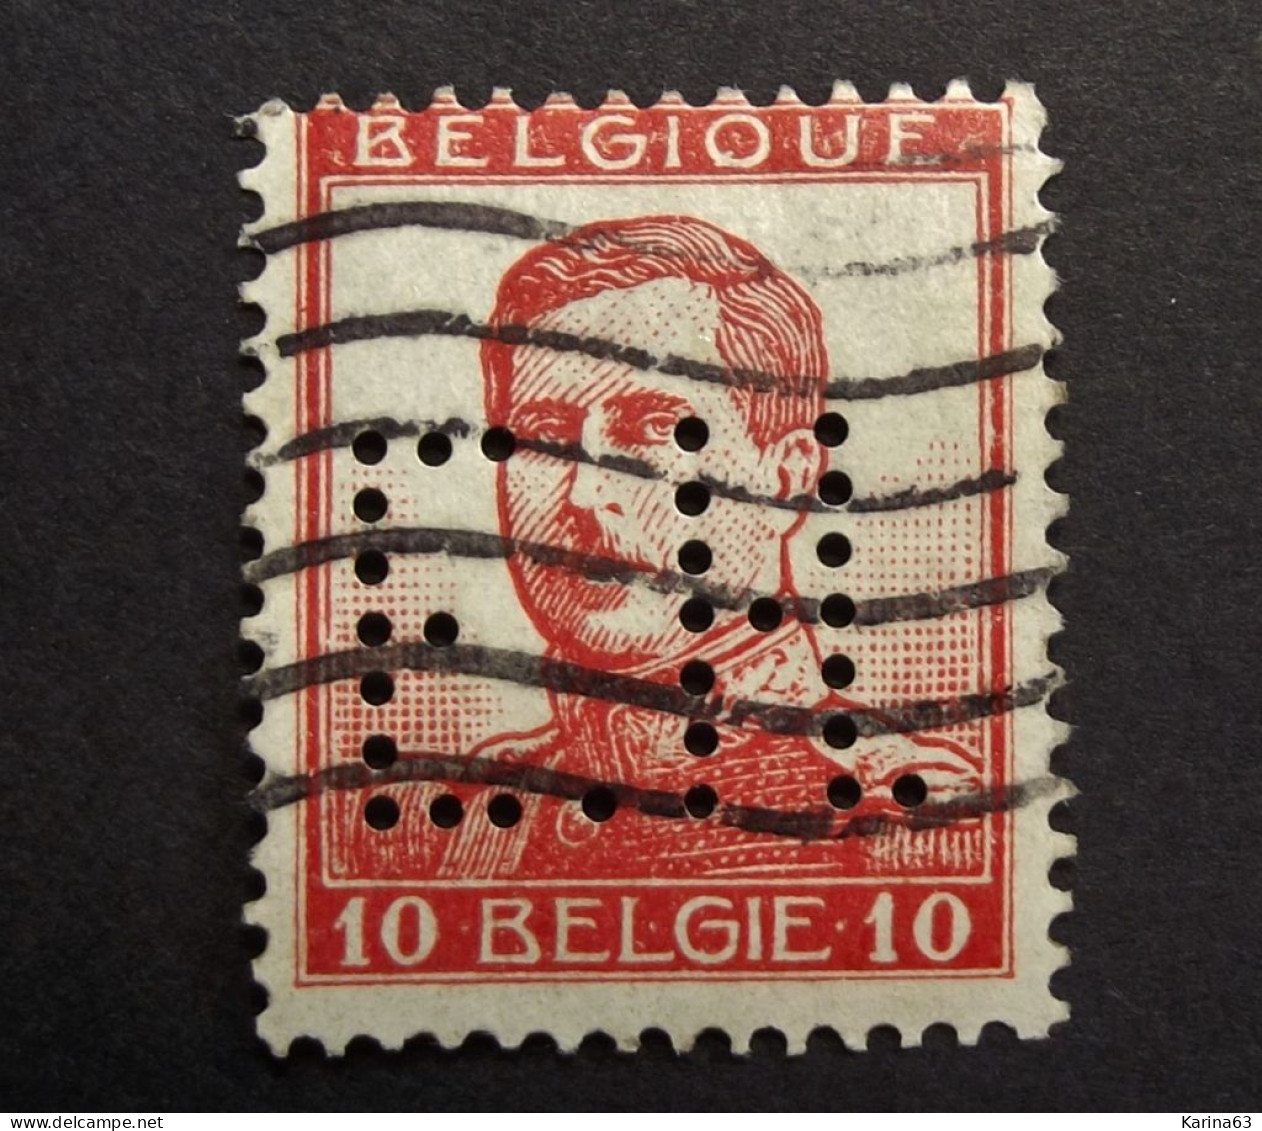 België - Belgique - Perfin Perforé - E. H. - Papeteries Génerales Belges Ed. Haseldonckx & Cie Brussel -  Cancelled - 1909-34